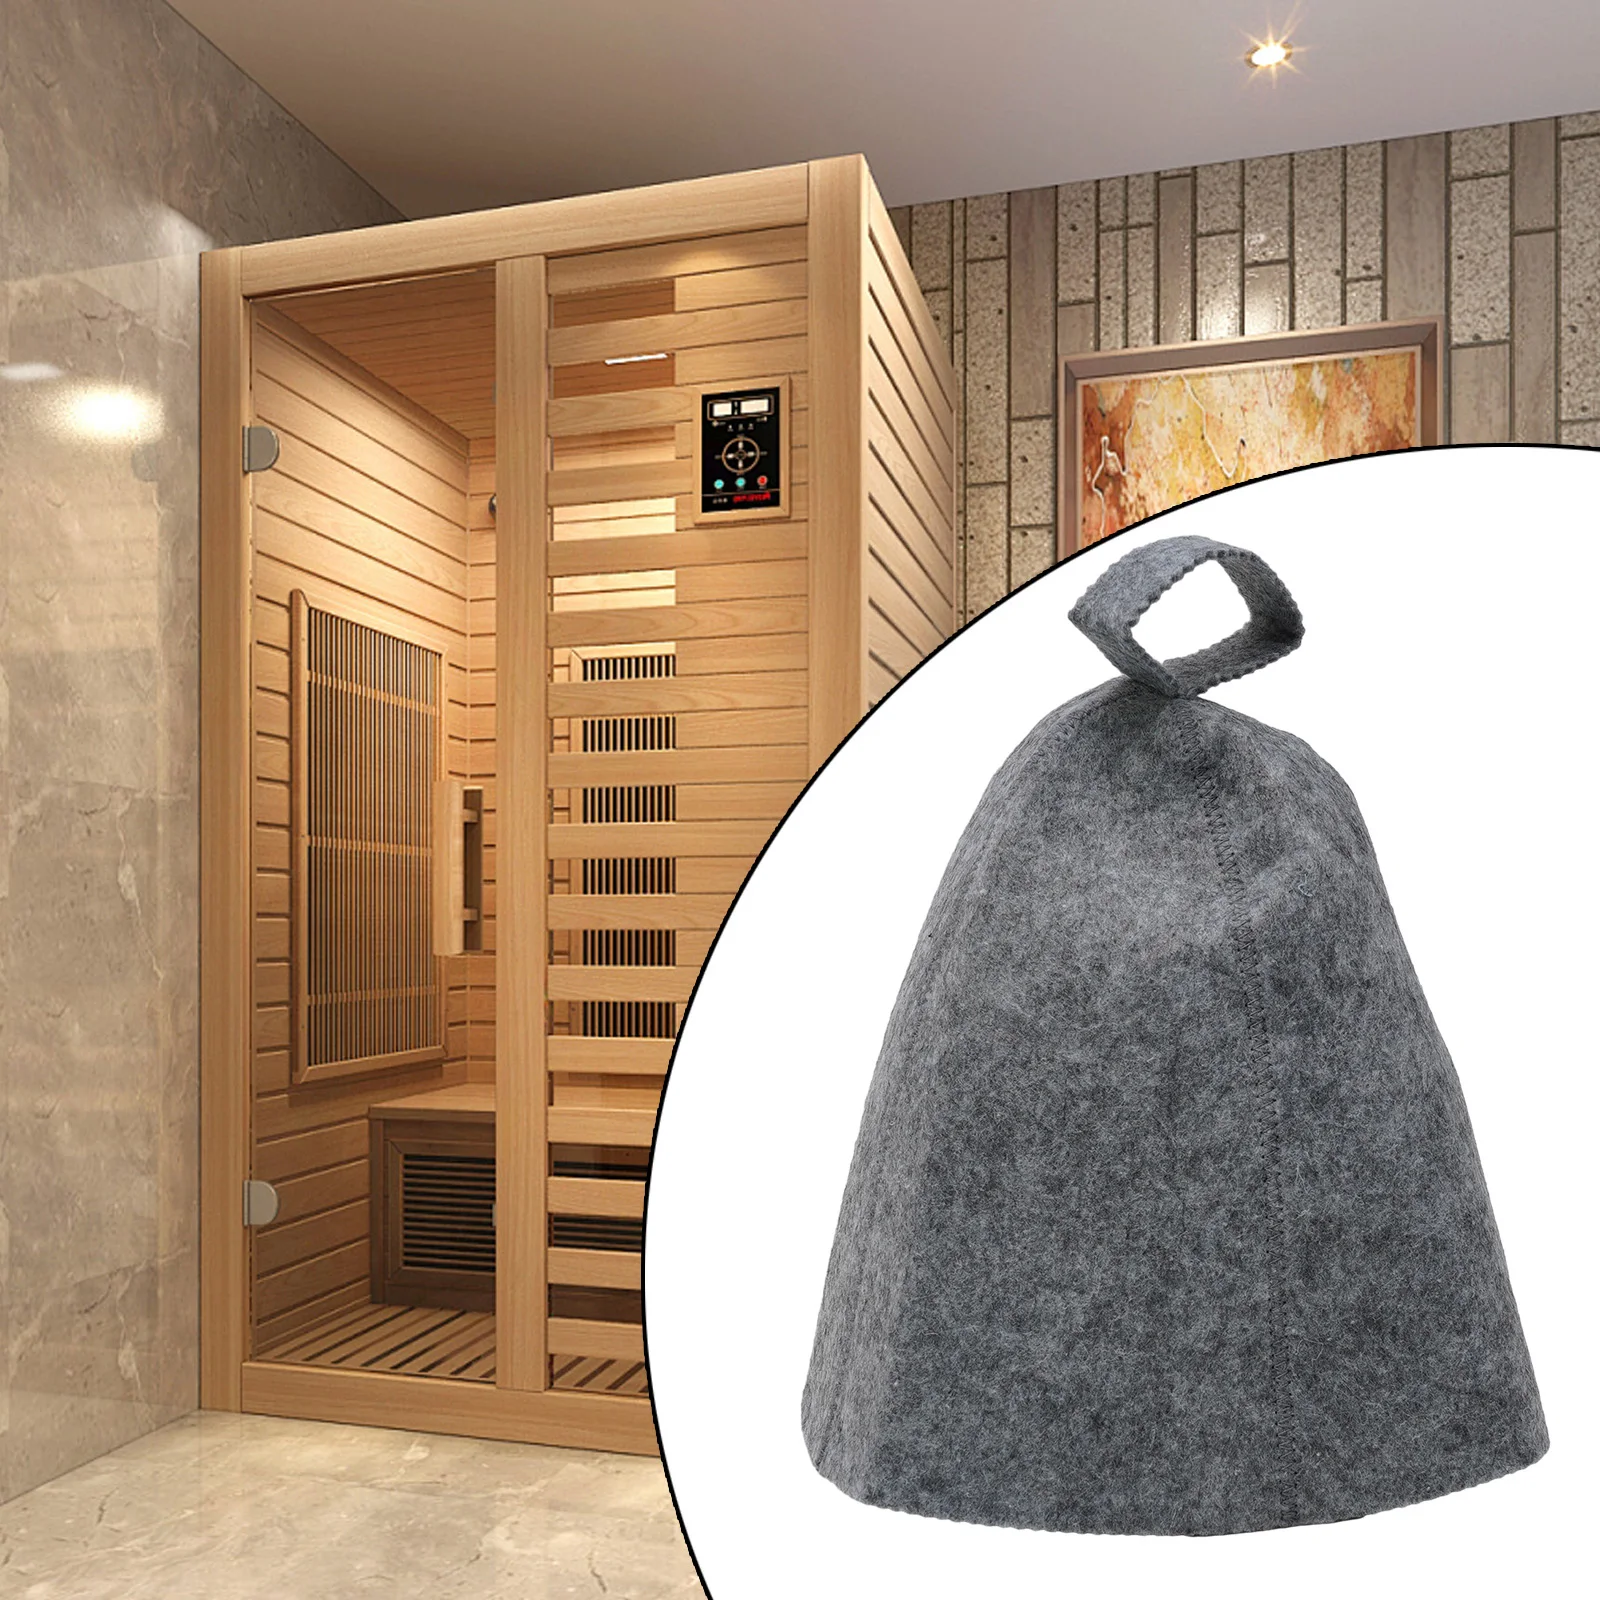 Gorro de lana para Sauna, protección anticalor, suave, sólido, para baño de Spa, con lazo colgante, práctico, de alta calidad, nuevo